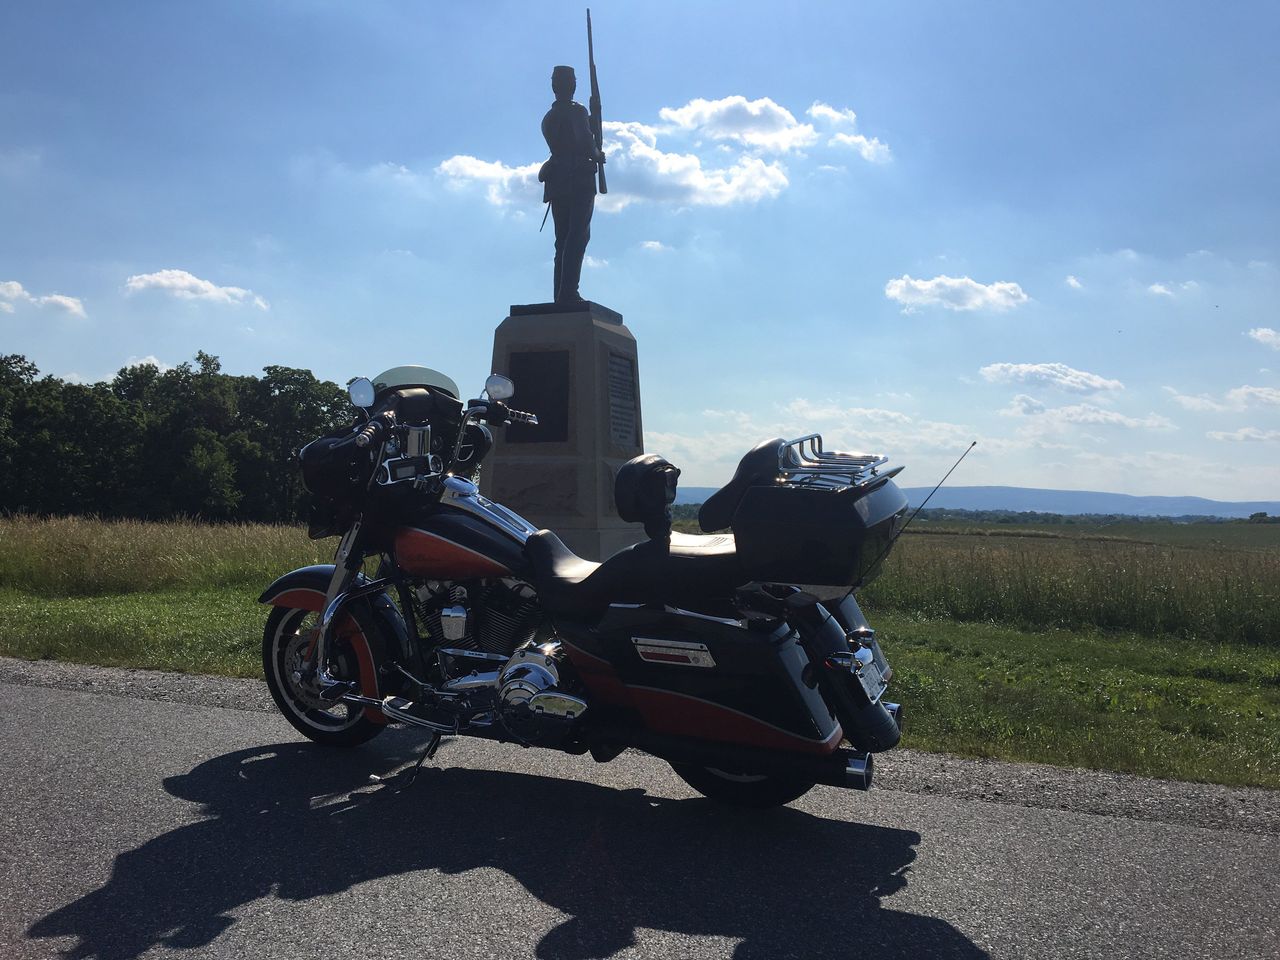 In Gettysburg 